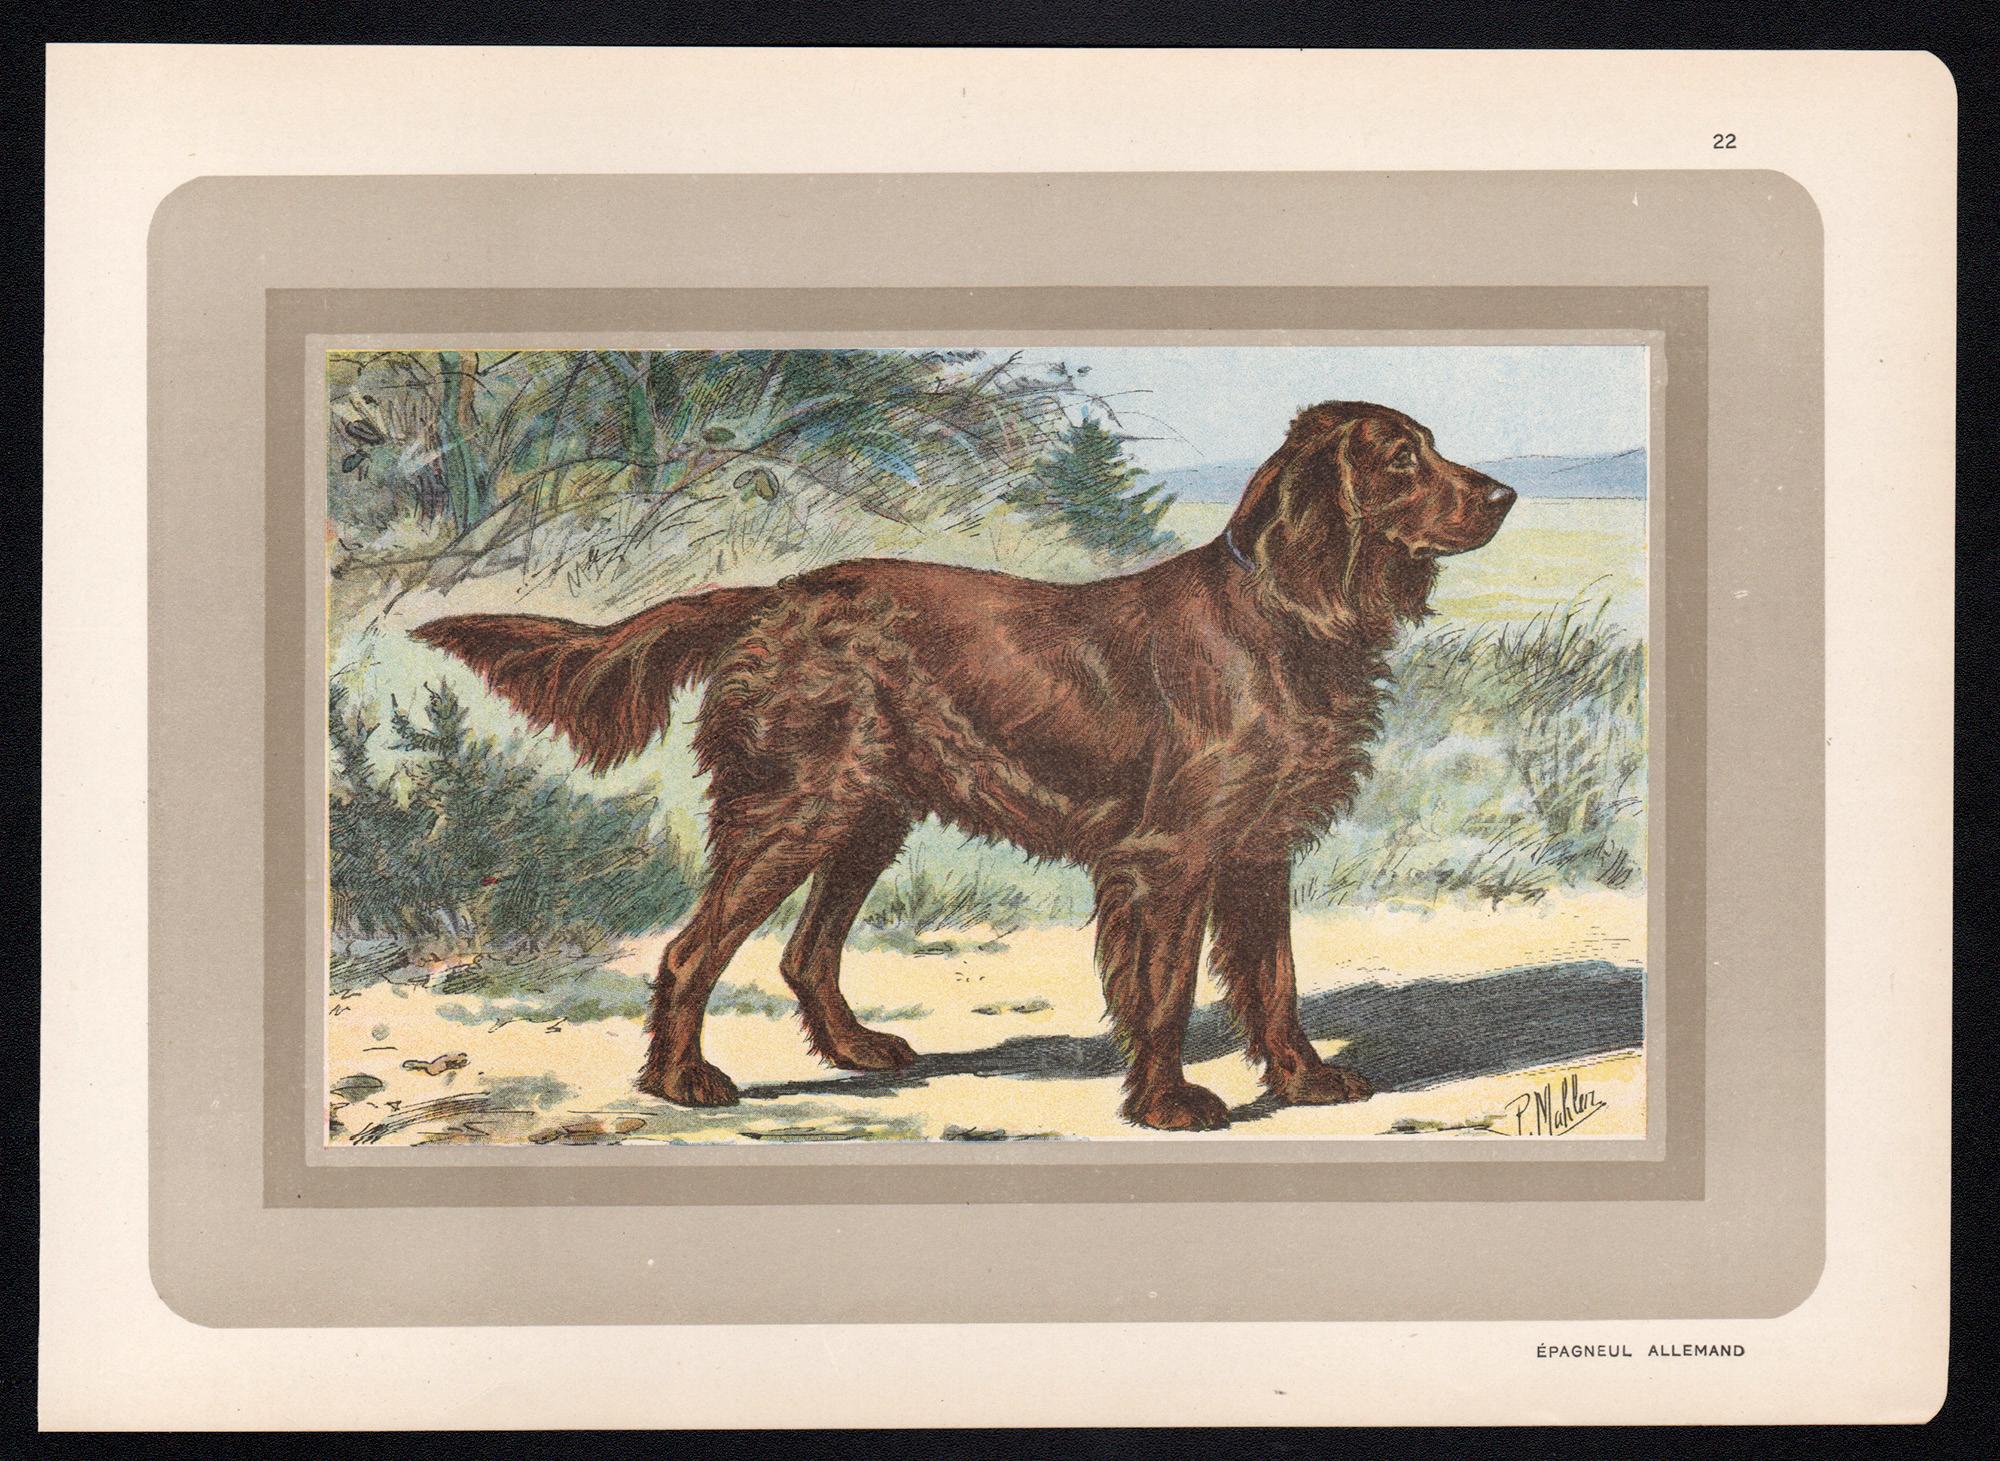 Epagneul Allemand - épagneul allemand, chien français, chromolithographie de chien, années 1930 - Print de P. Mahler